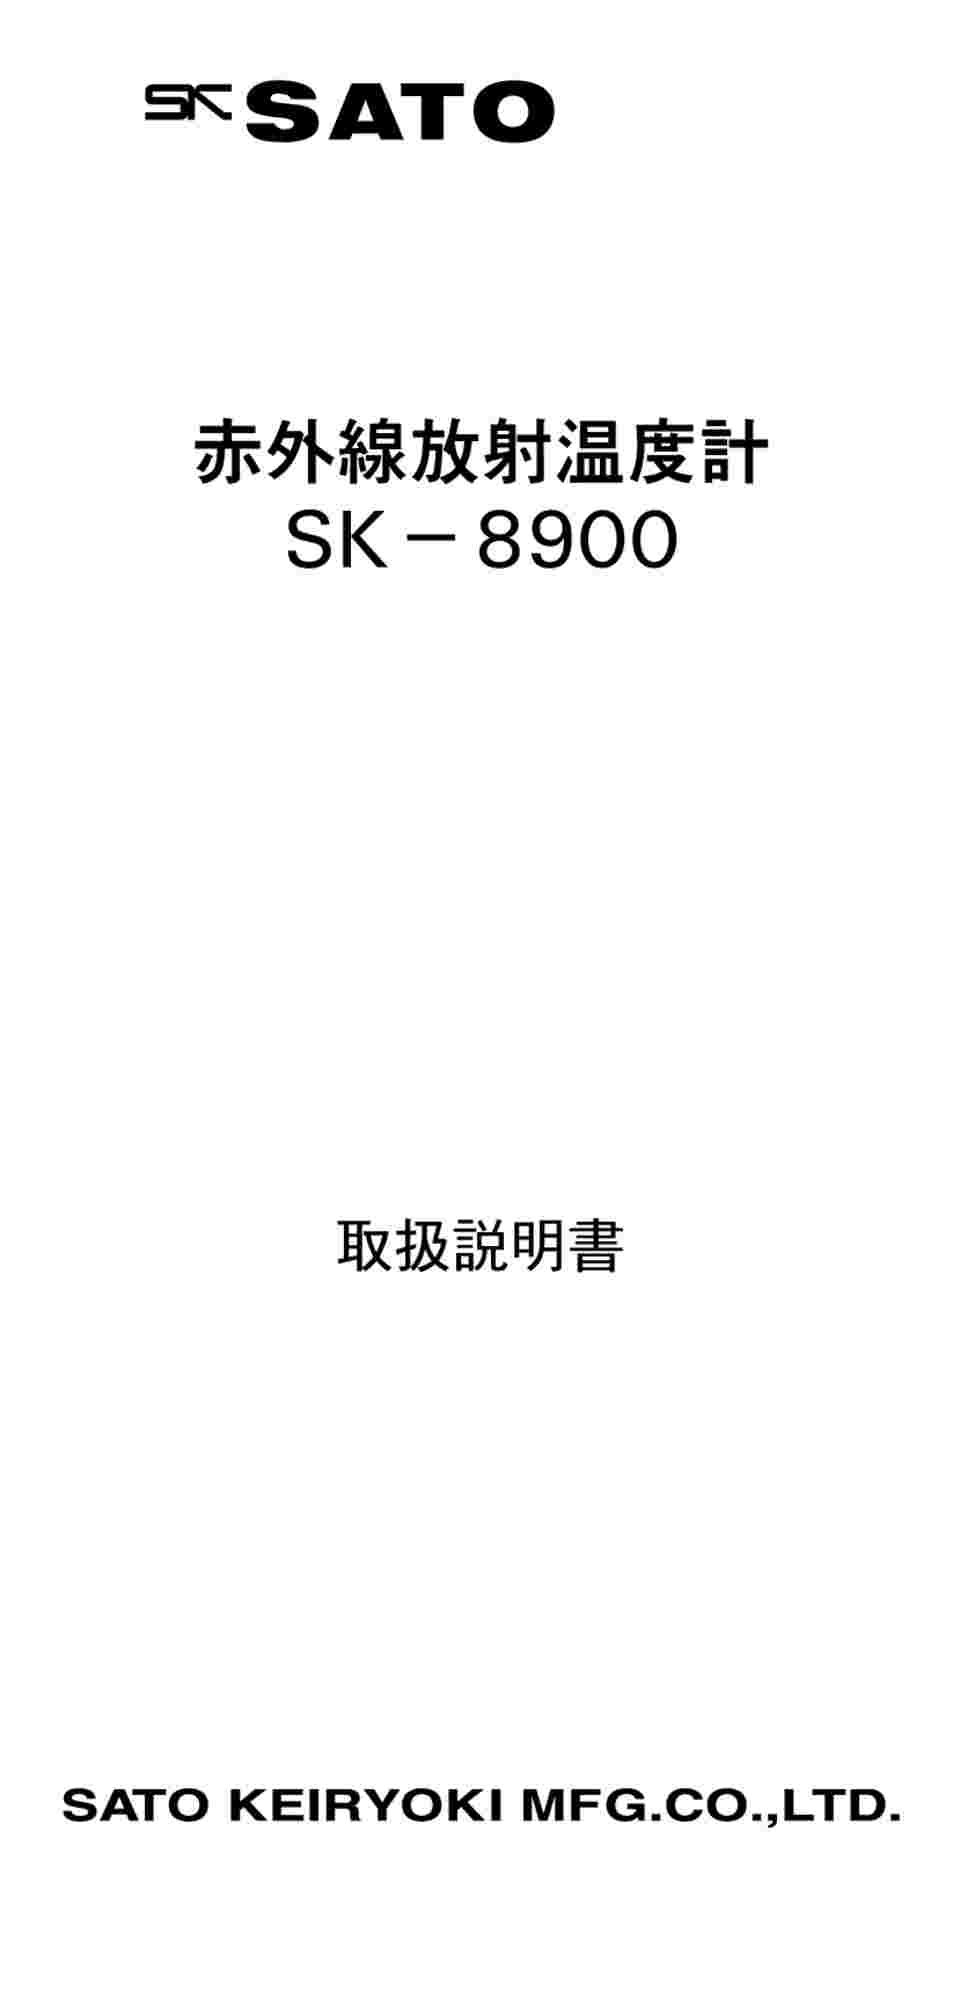 1-8805-01-56 赤外線放射温度計 英語版校正証明書付 SK-8900 【AXEL